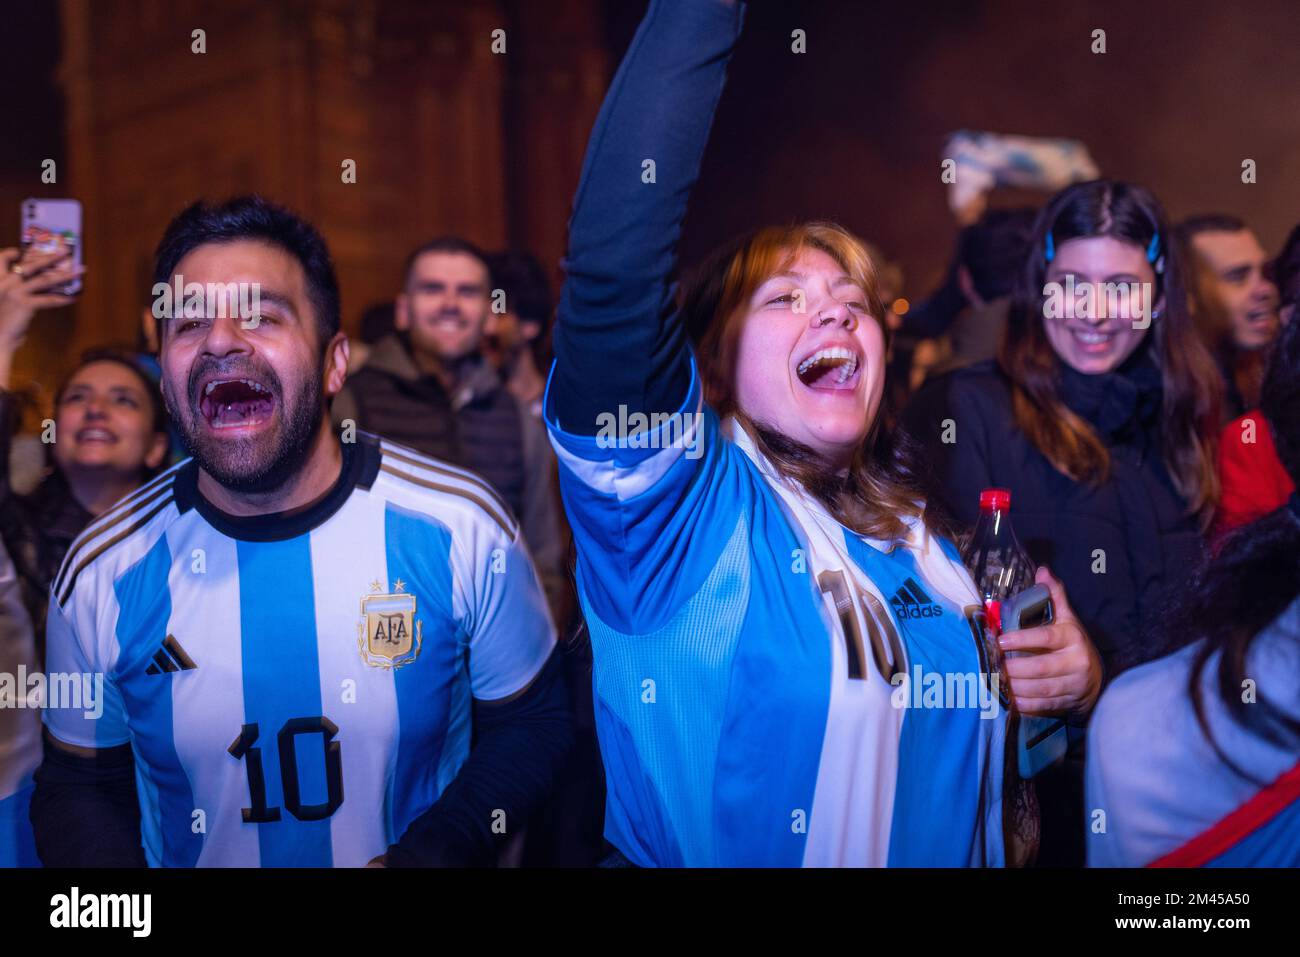 Barcellona, Spagna. 18th Dec, 2022. I tifosi sono visti celebrare la vittoria dell'Argentina sulla Francia dopo la partita di calcio. I tifosi si sono riuniti per festeggiare dopo che la squadra argentina, guidata da messi, ha battuto la Francia 4-2 alle penalità, vincendo la Coppa del mondo di calcio per la terza volta nella sua storia. Credit: SOPA Images Limited/Alamy Live News Foto Stock